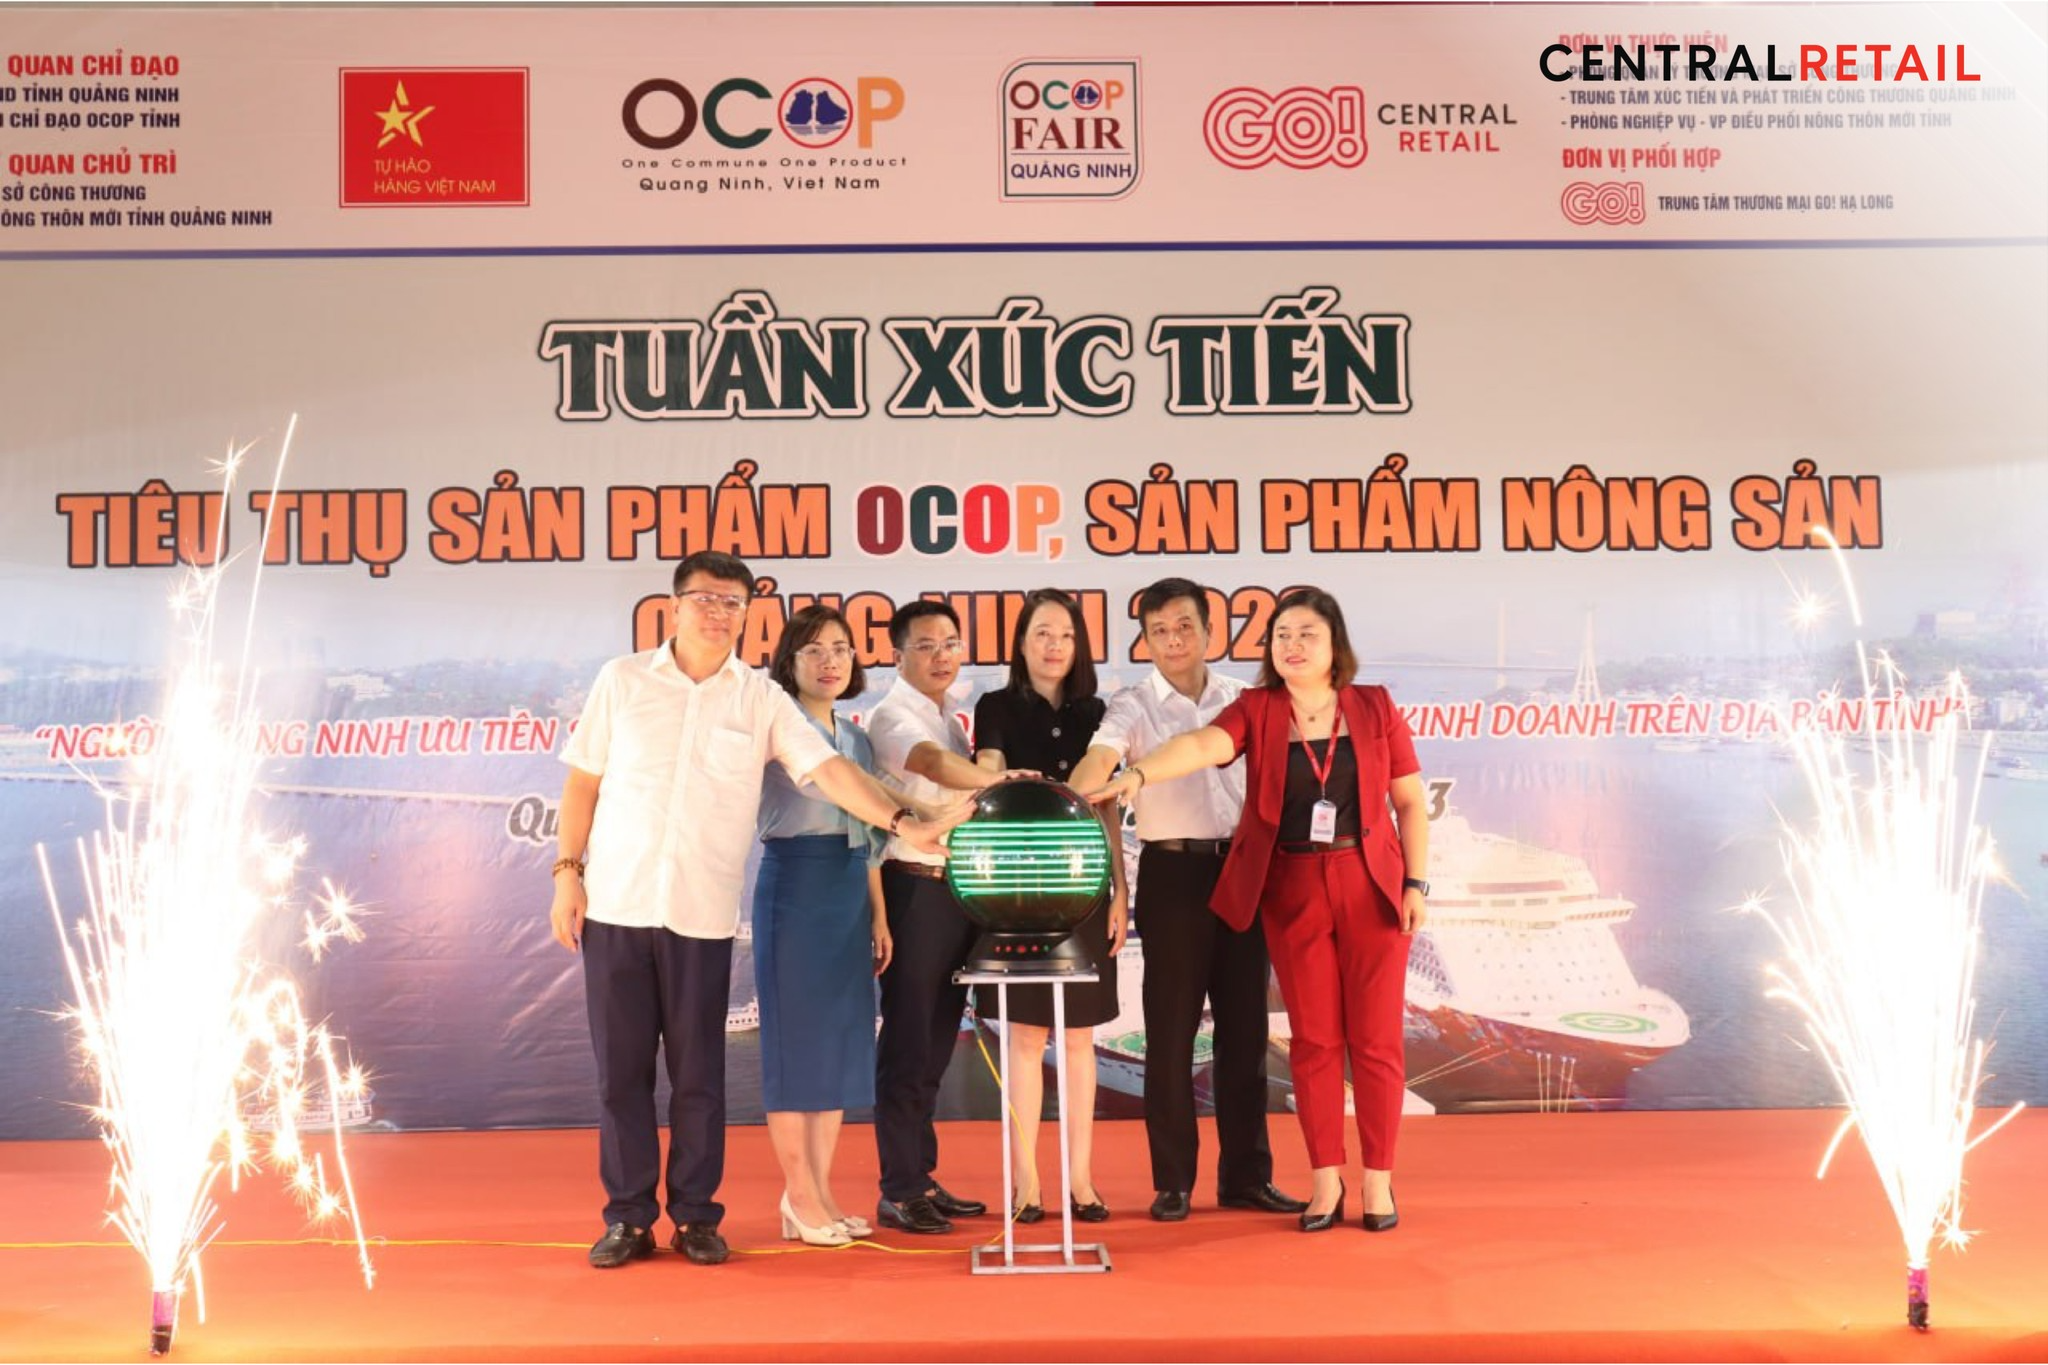 Central Retail tại Việt Nam và Sở Công Thương tỉnh Quảng Ninh phối hợp tổ chức Tuần xúc tiến tiêu thụ sản phẩm OCOP & Nông sản Quảng Ninh 2023